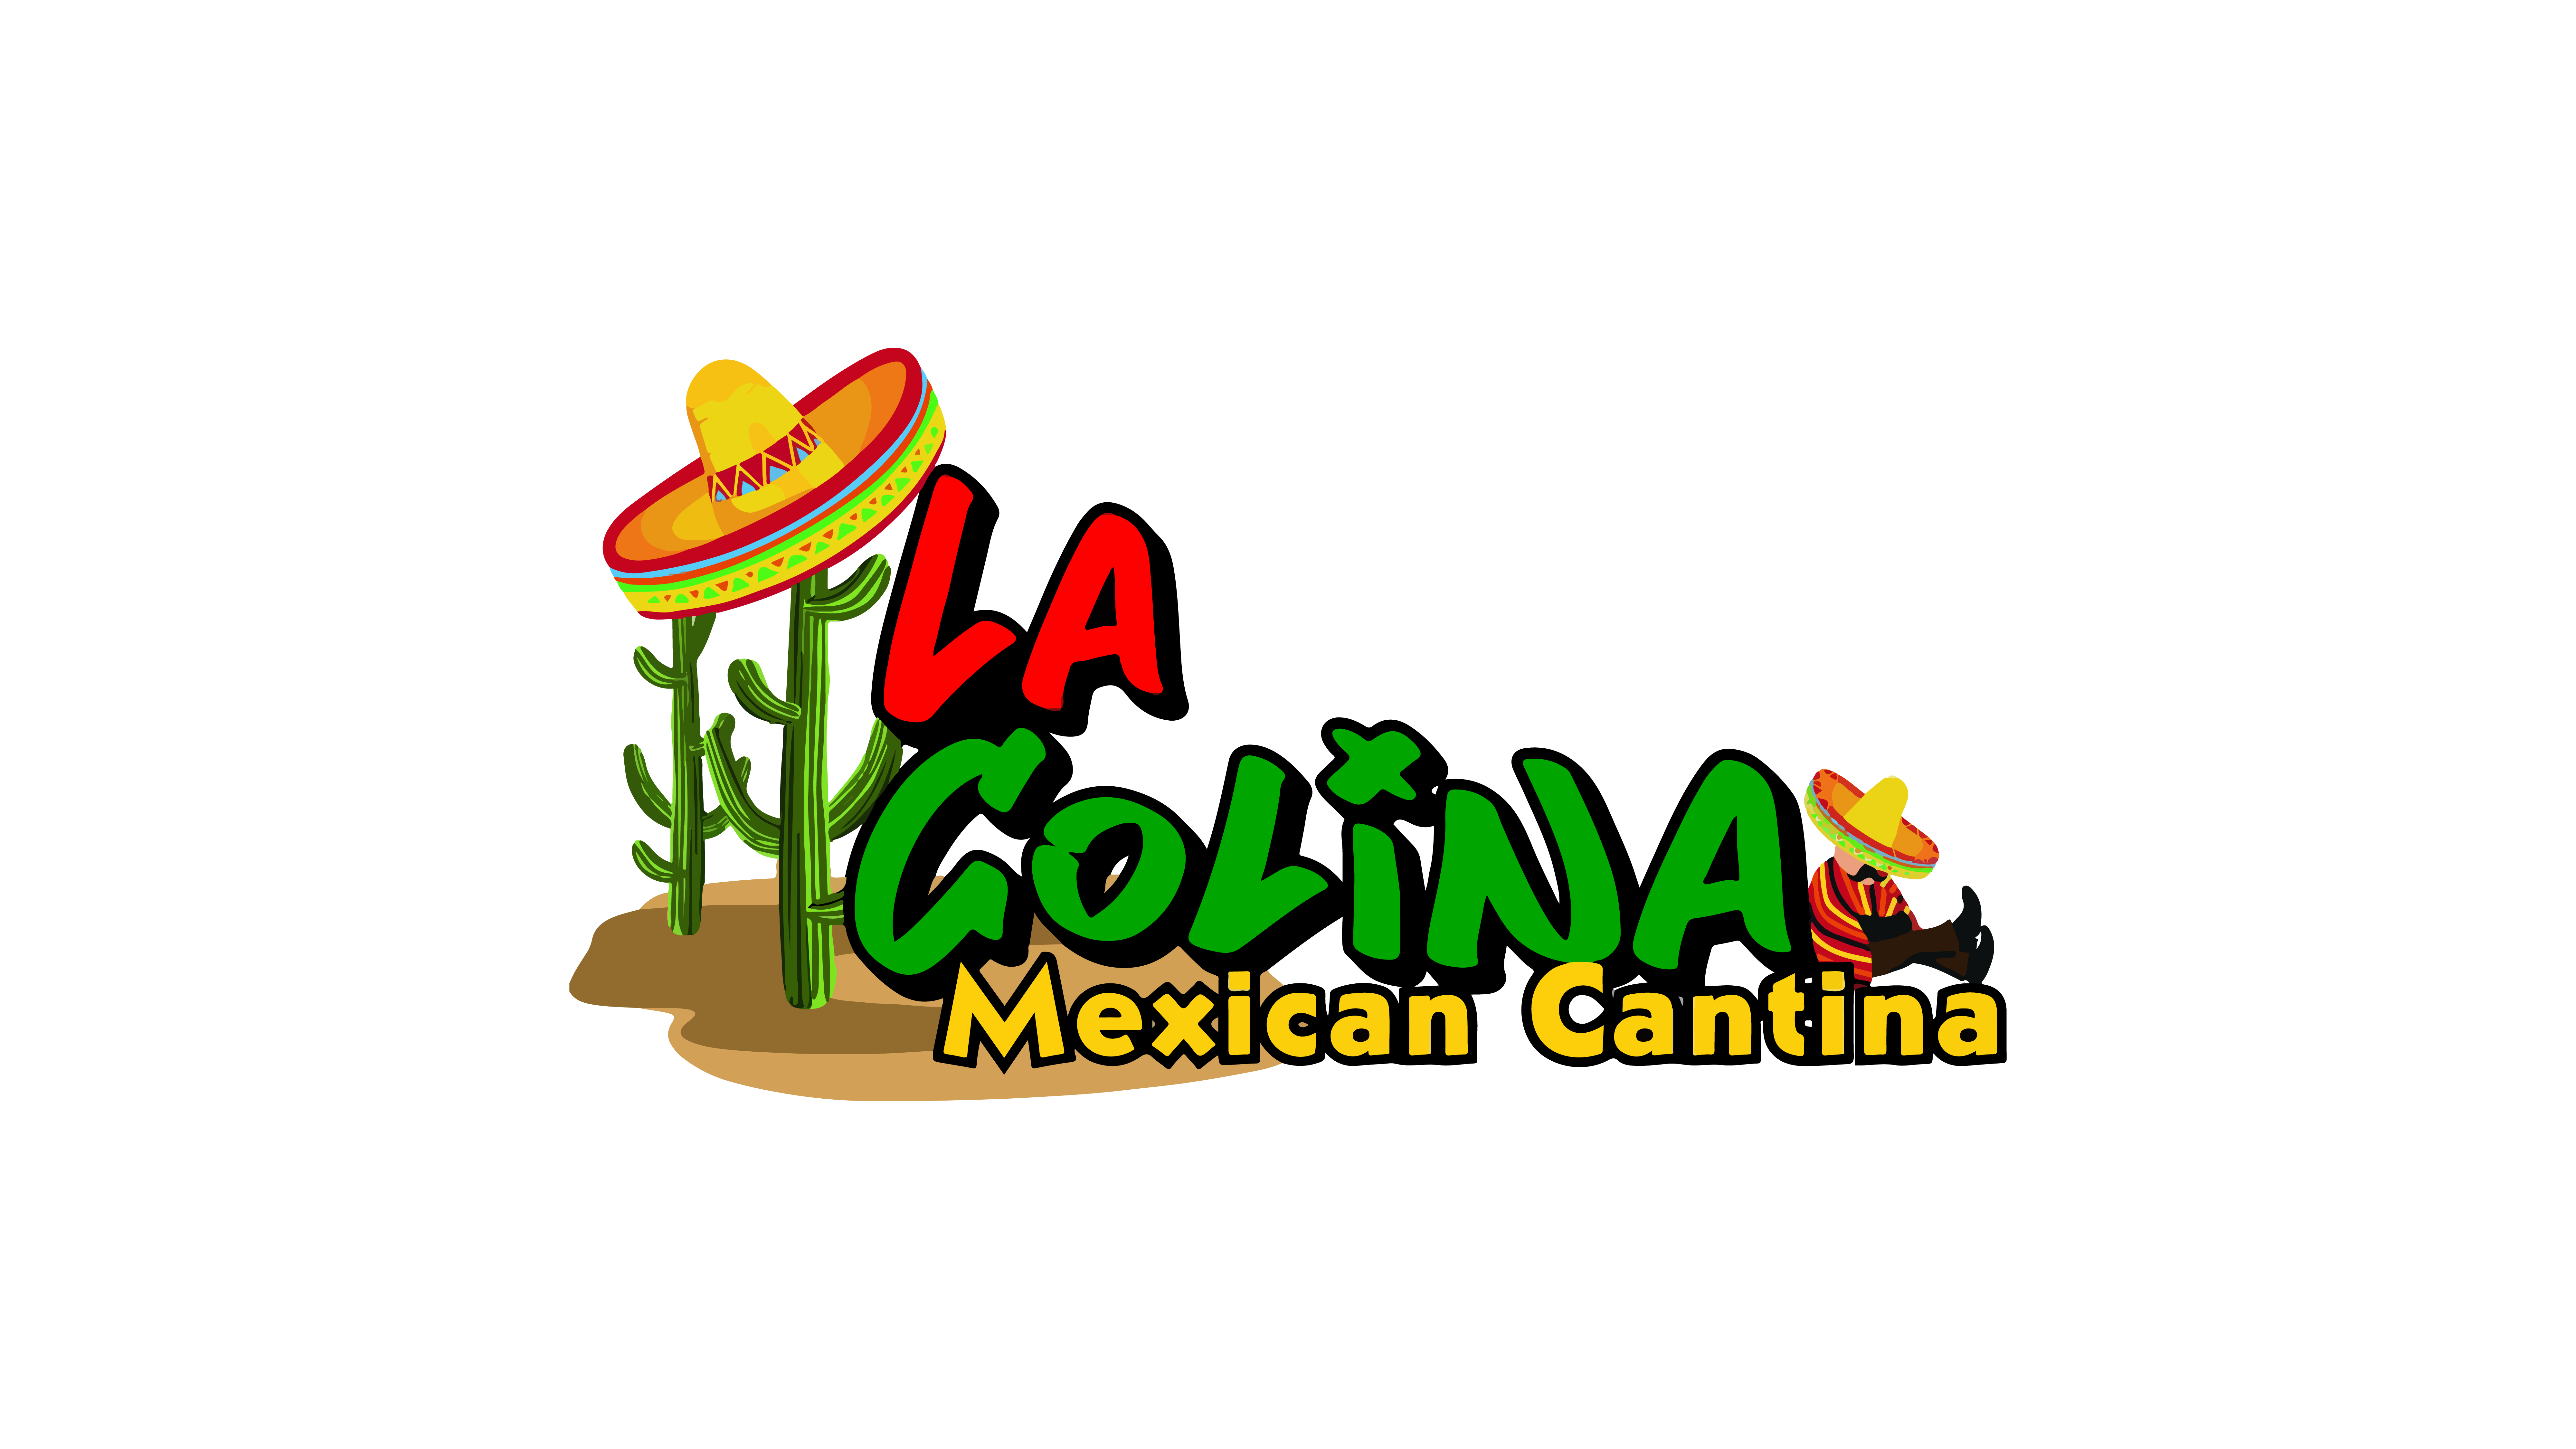 La-Colina-Mexican-Restaurant-NEW-01-2.png